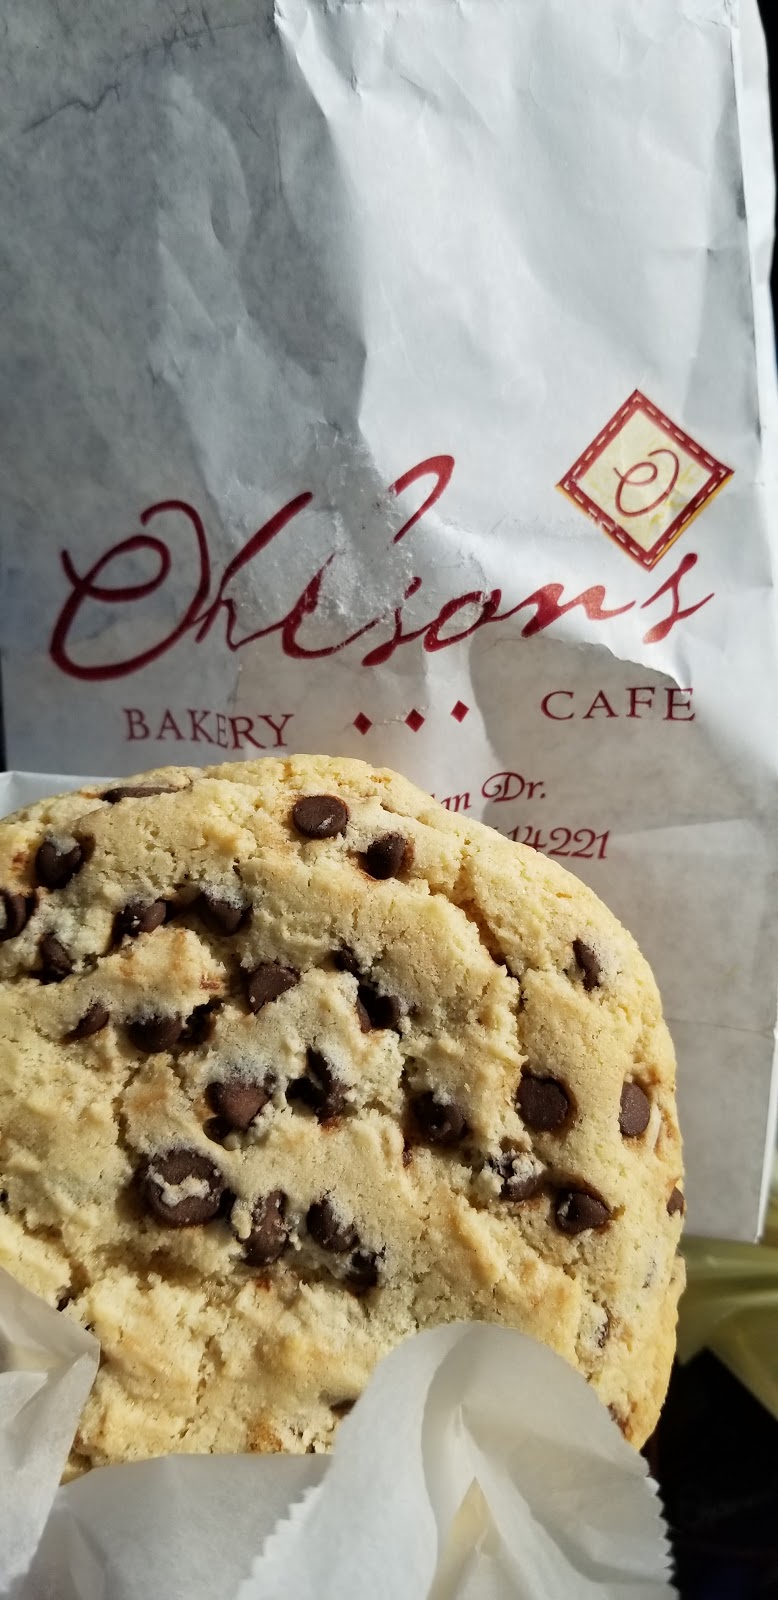 Ohlsons Bakery & Cafe | 8500 Sheridan Dr, Buffalo, NY 14221, USA | Phone: (716) 626-7783